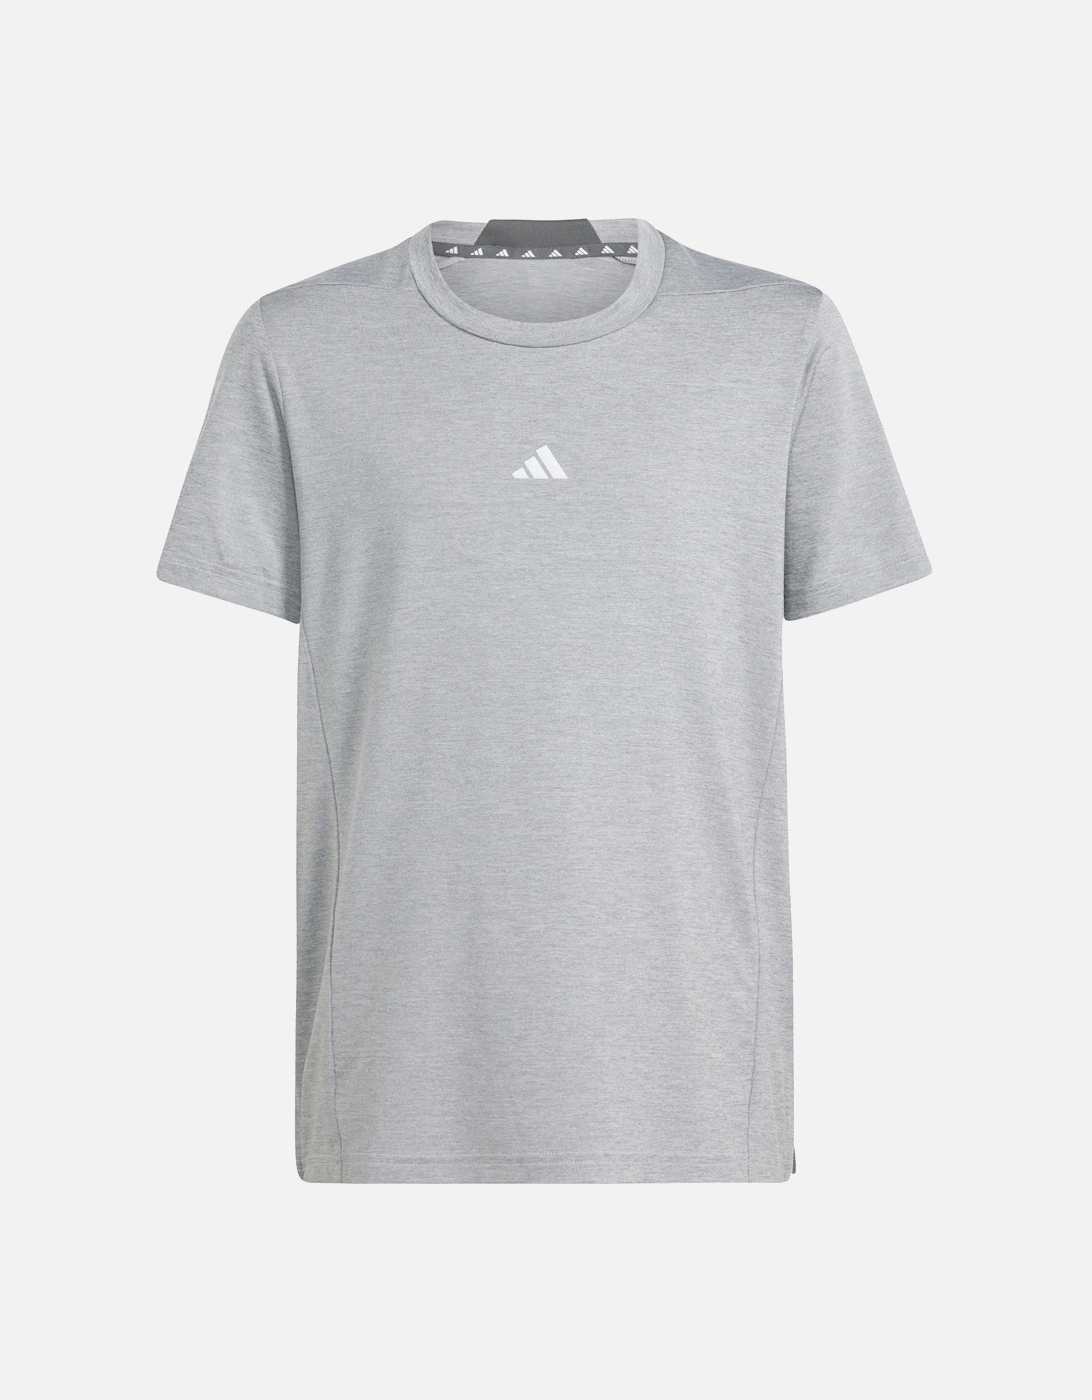 Juniors Heathered T-Shirt (Grey), 6 of 5